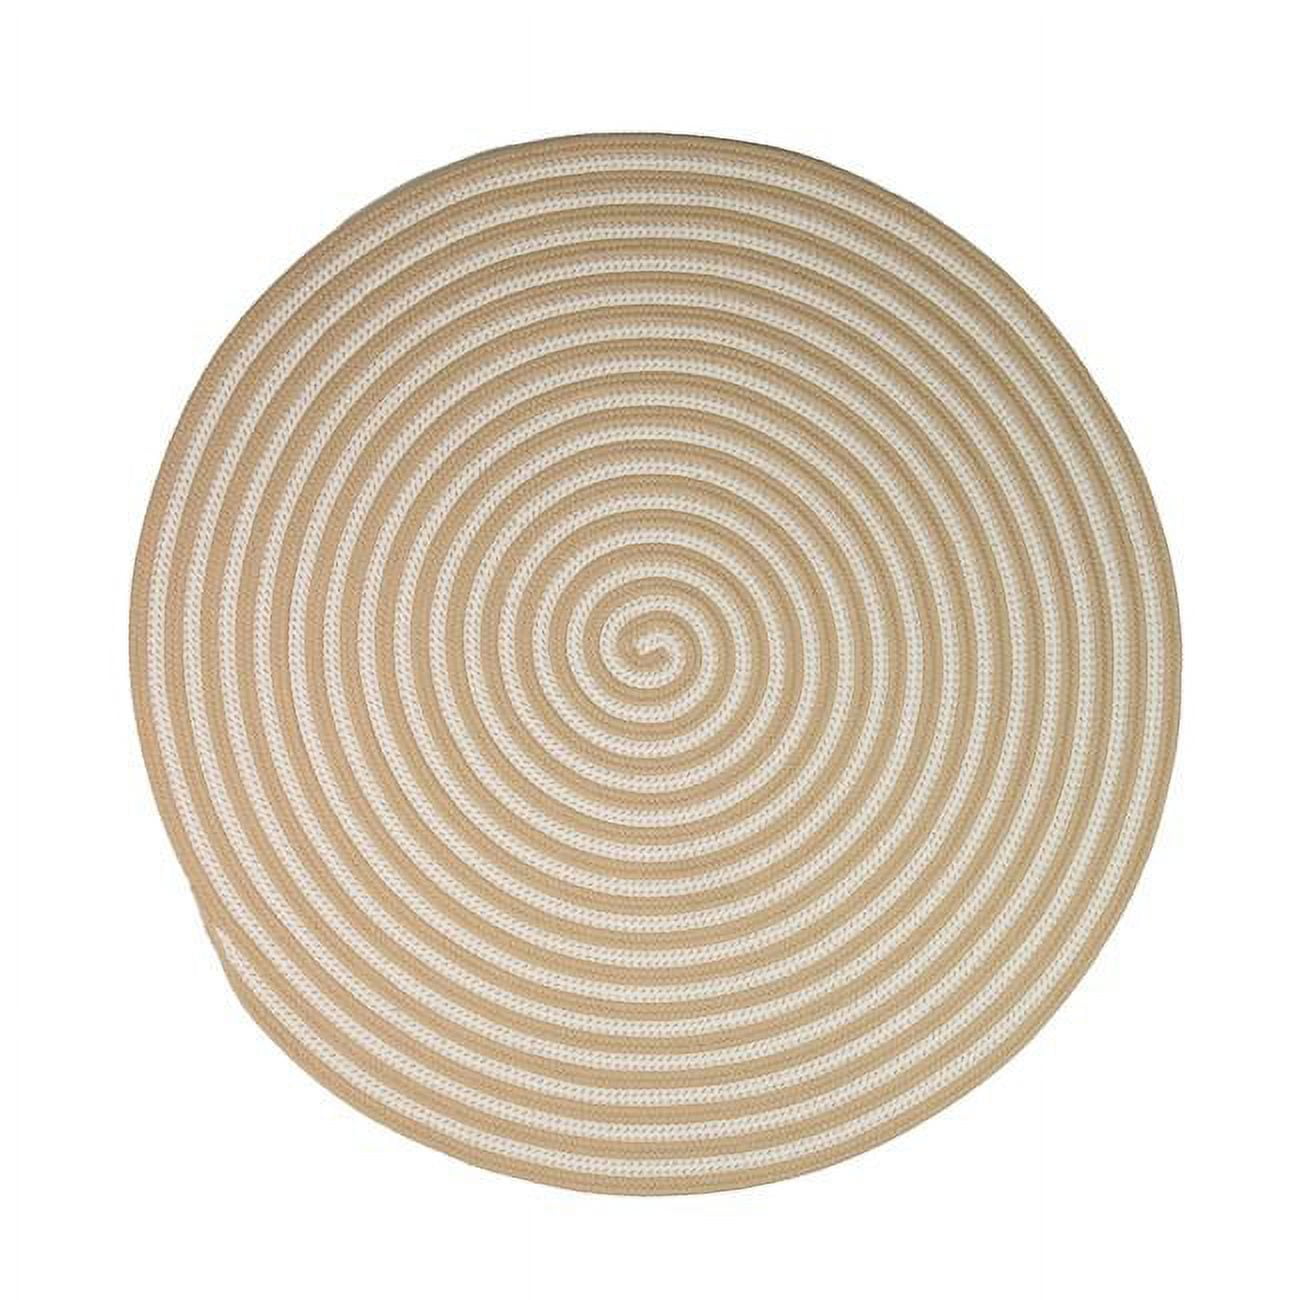 70 x 70 in. Tiki Spiral Doormats, Sandstorm -  Designs-Done-Right, DE2849454